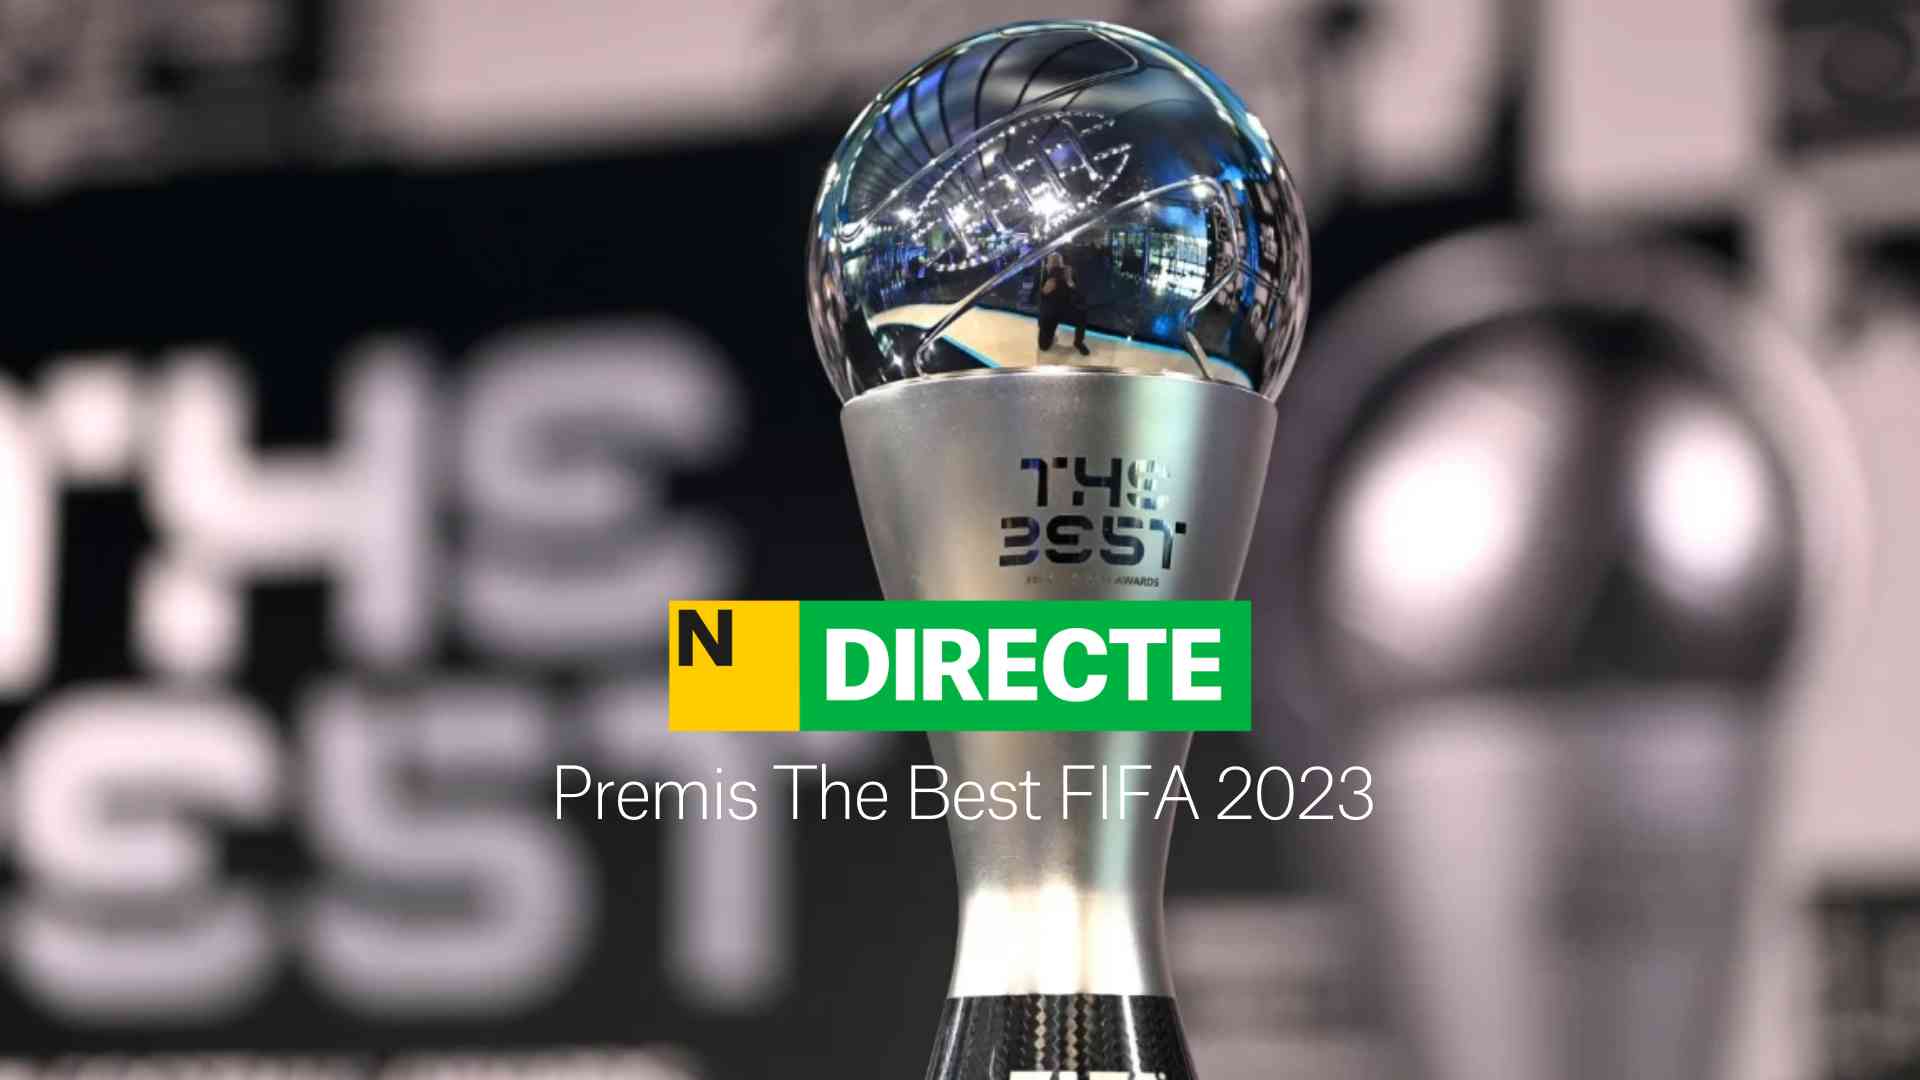 Premis The Best 2023, DIRECTE | Aitana Bonmatí i Leo Messi, els guanyadors de la gala